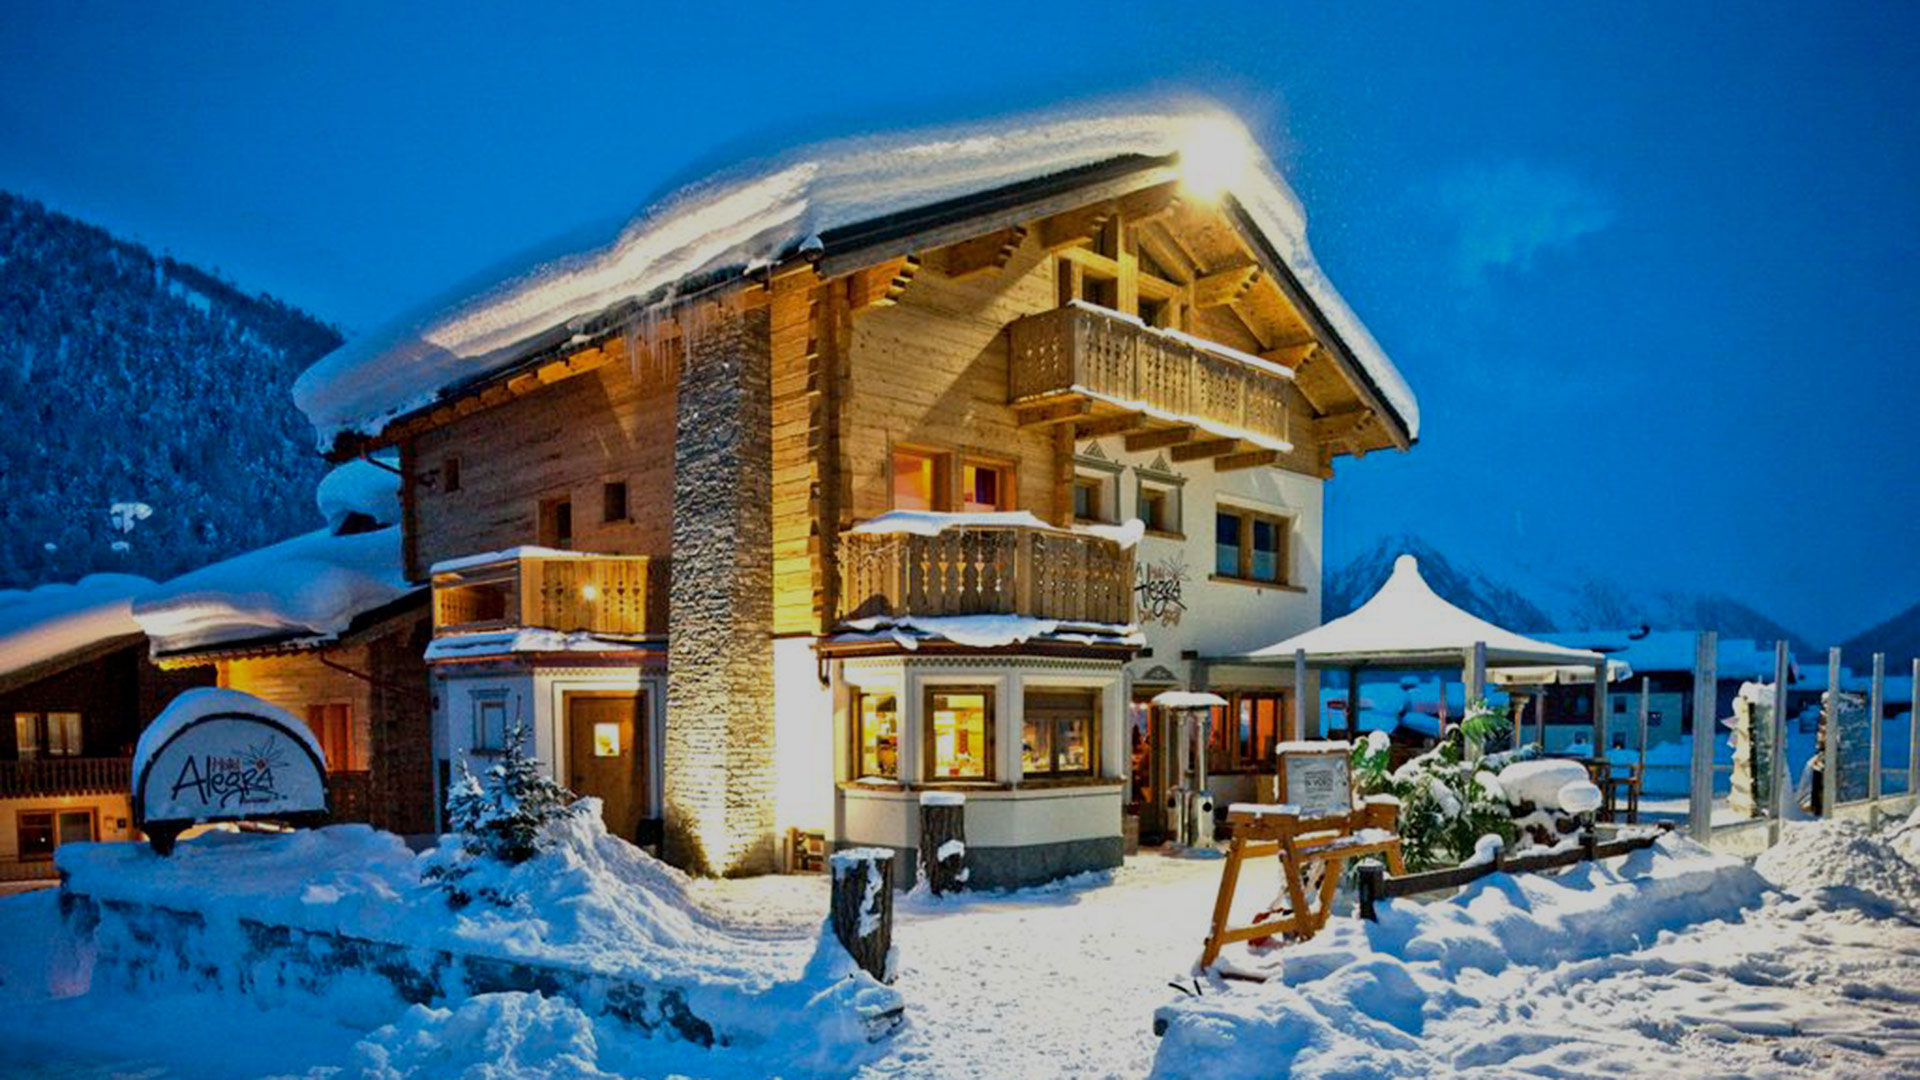 Accomodation in the ski resort hotel Alegra in Livigno